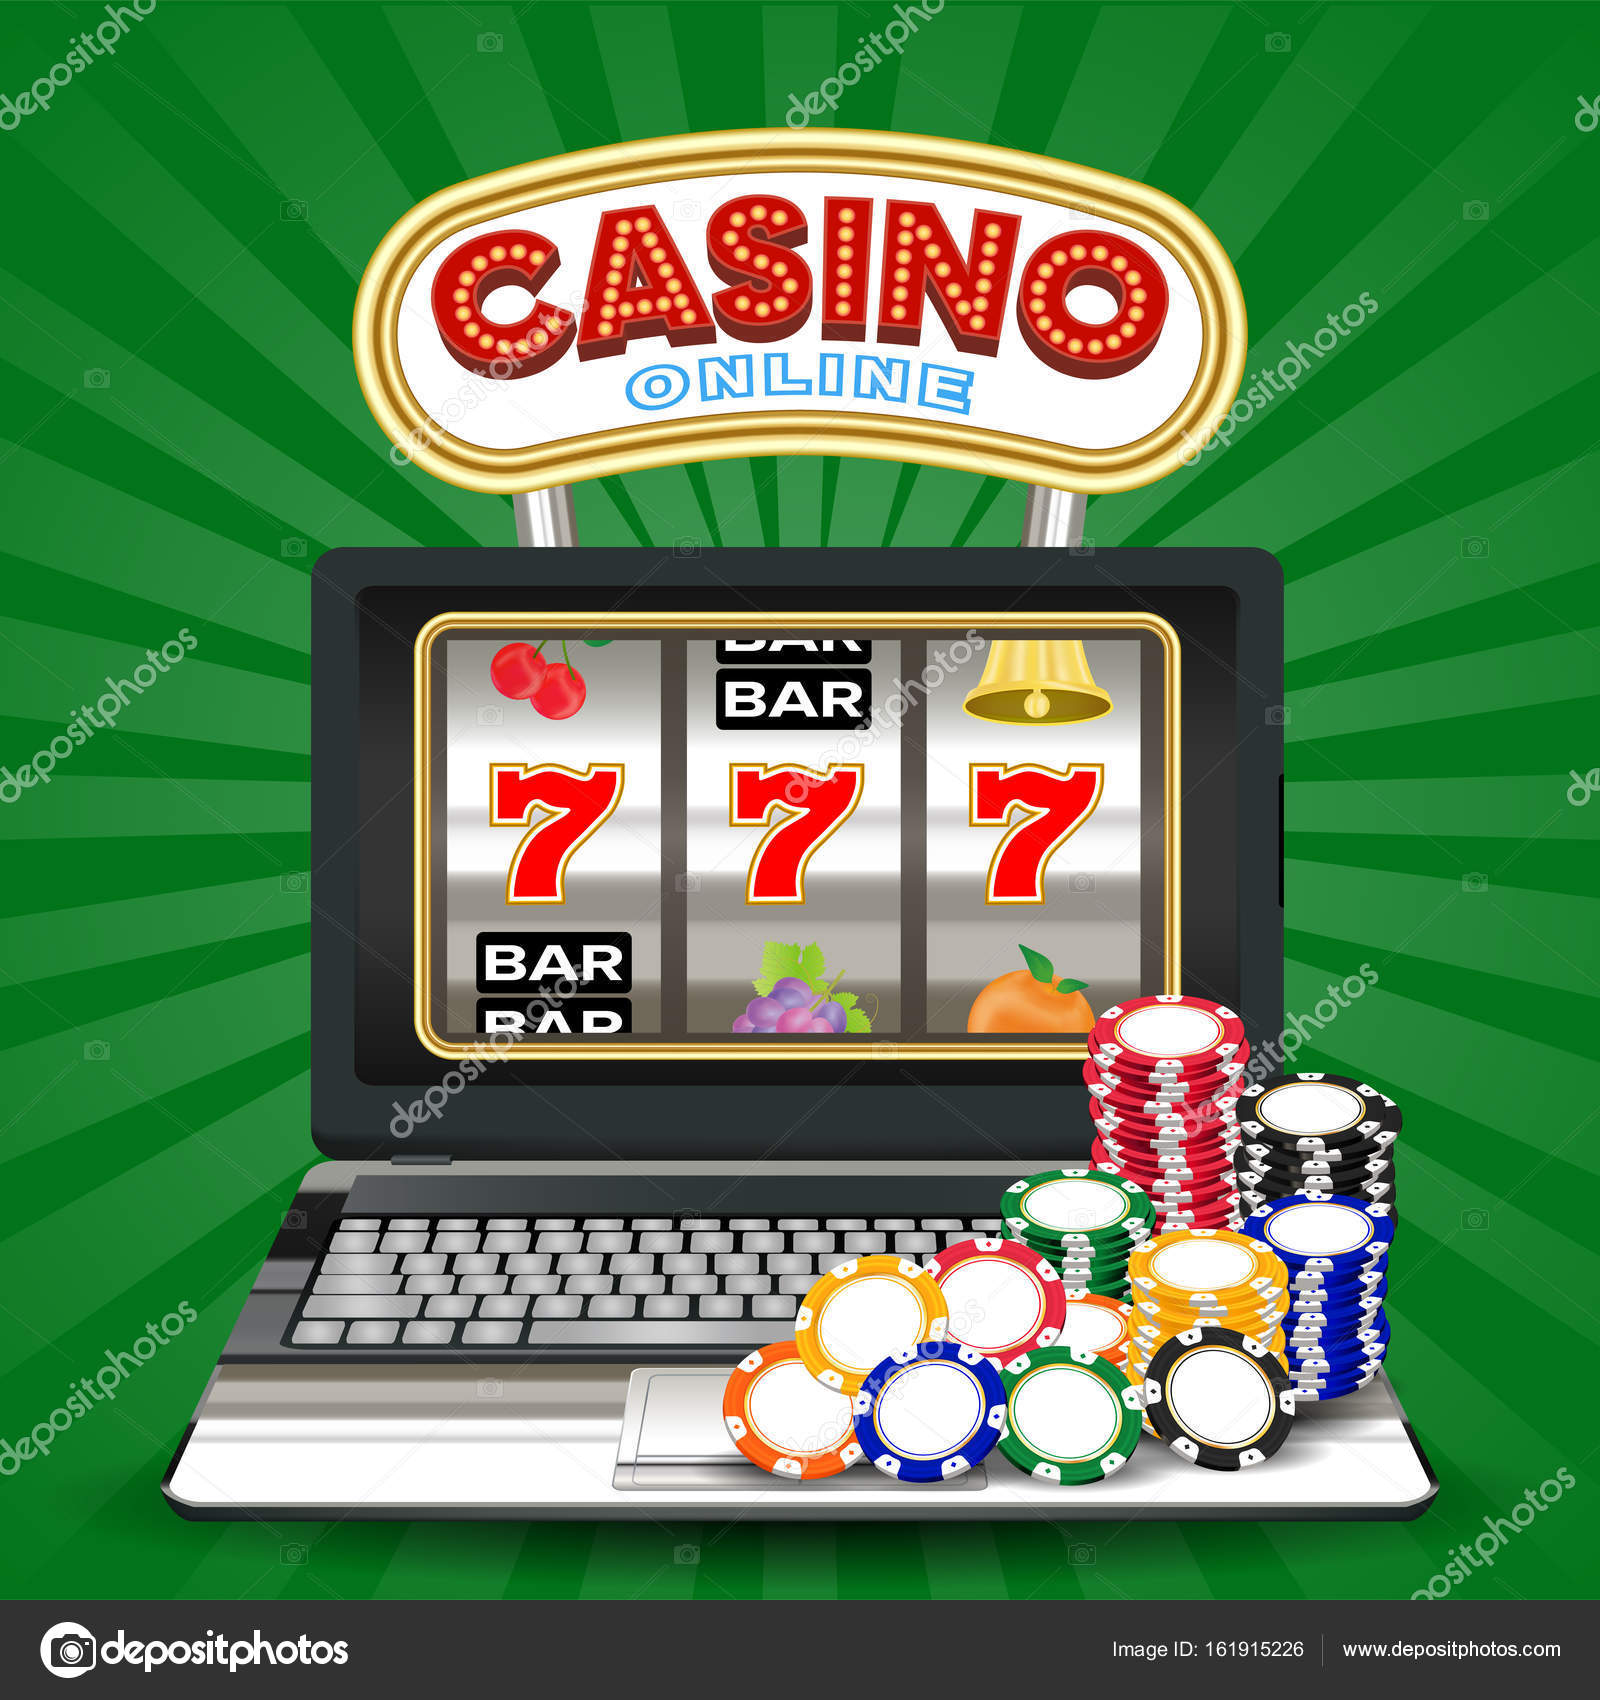 Jocuri de cazino online gratuite